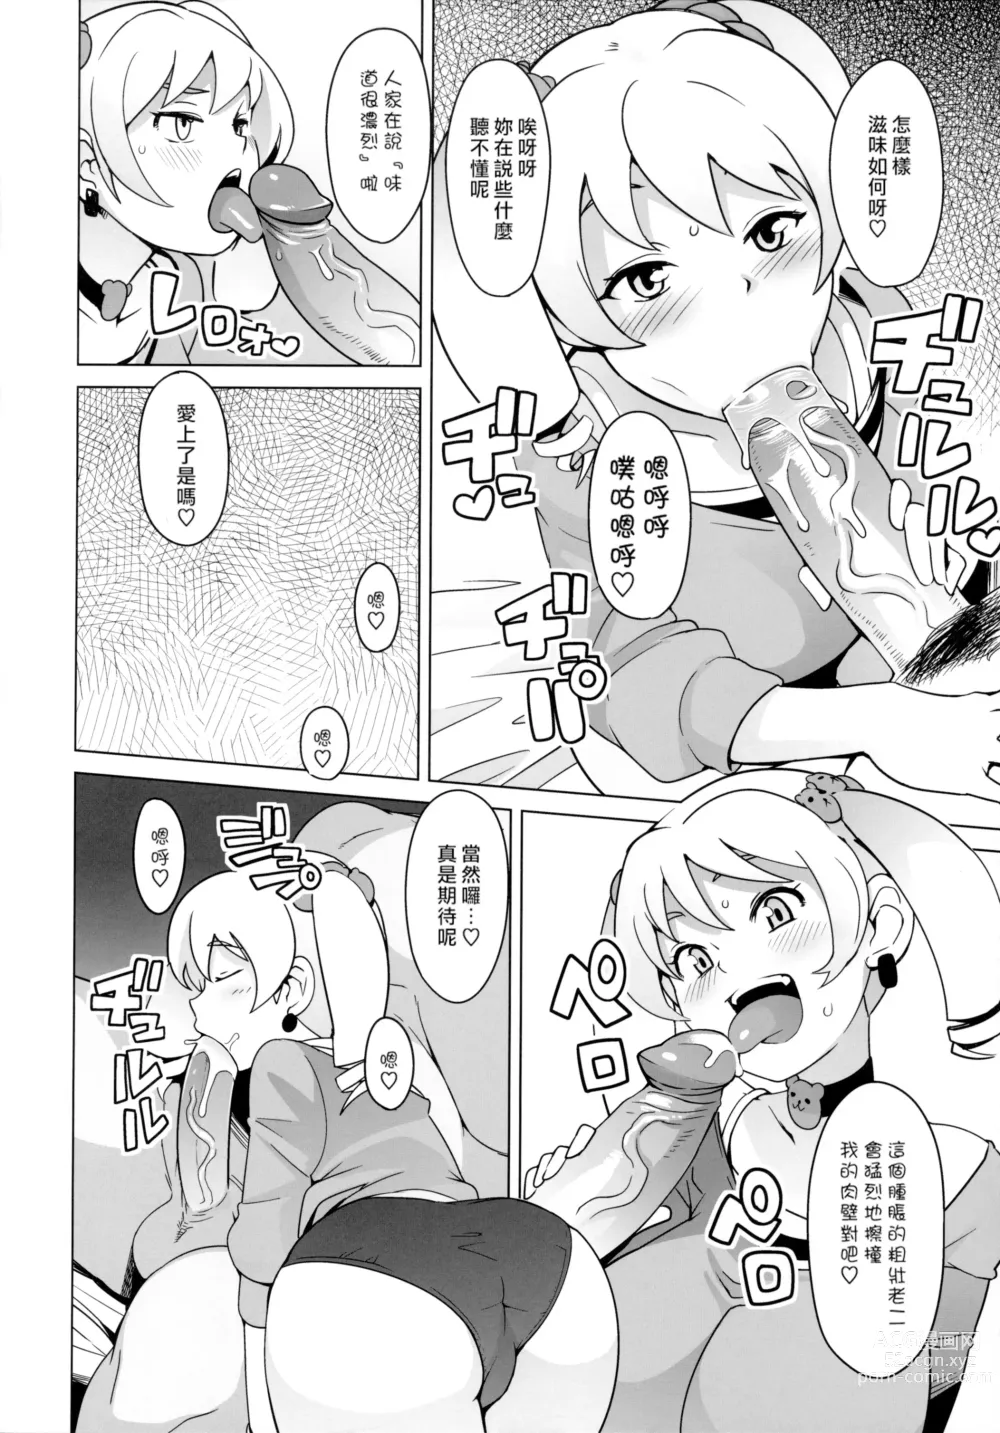 Page 7 of doujinshi Chibikko Bitch Hunters (decensored)